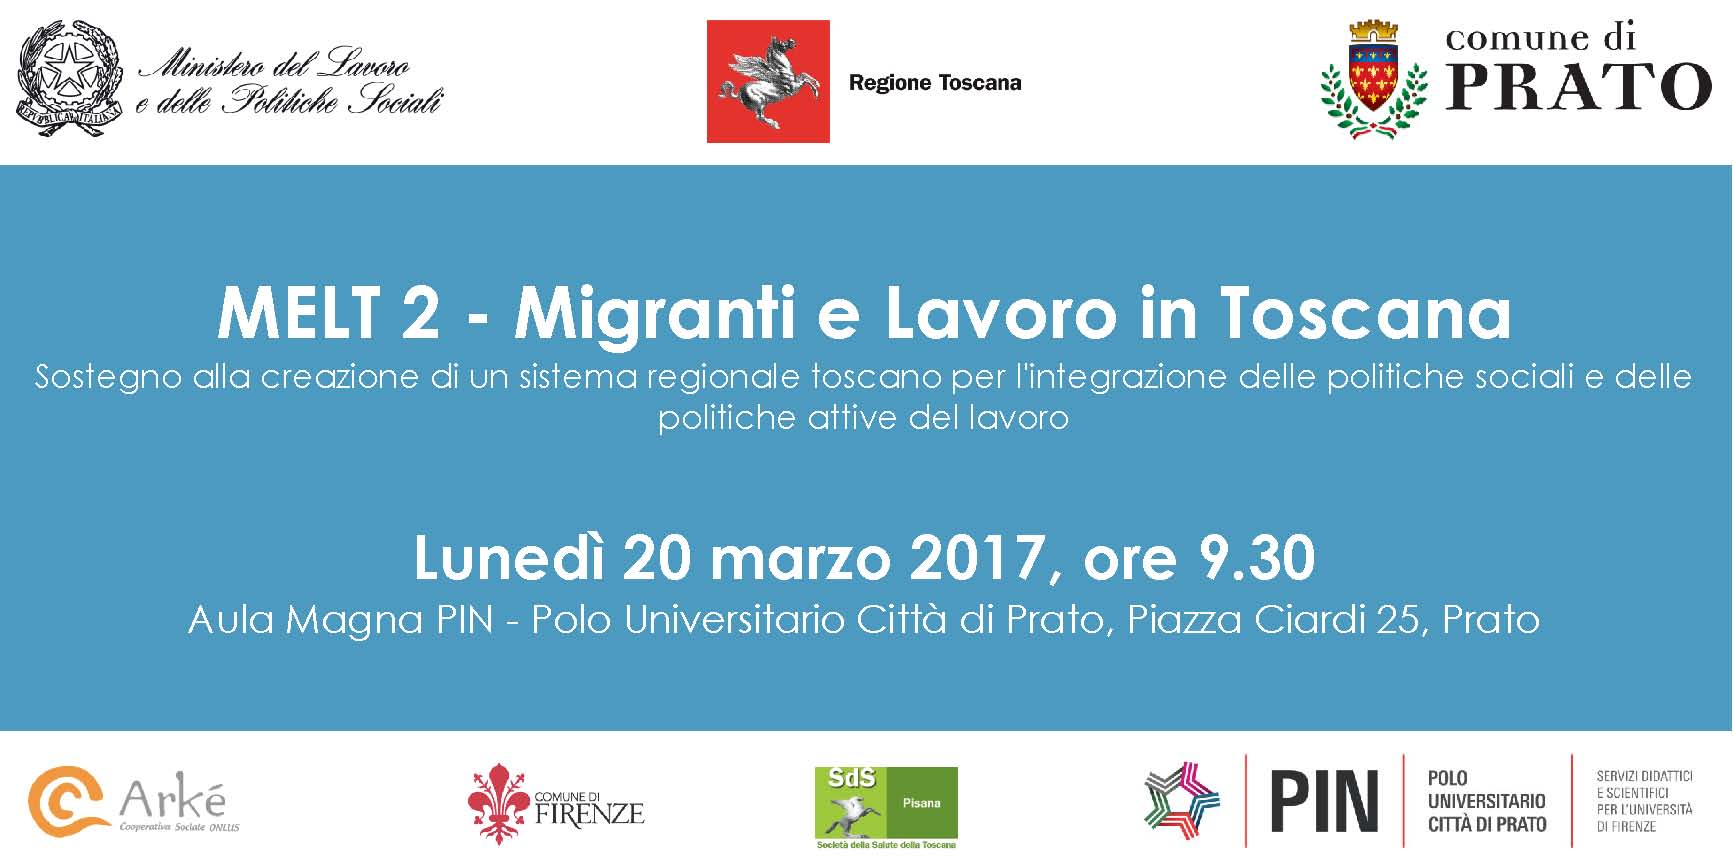 Locandina evento MELT 2  Migranti e Lavoro in Toscana